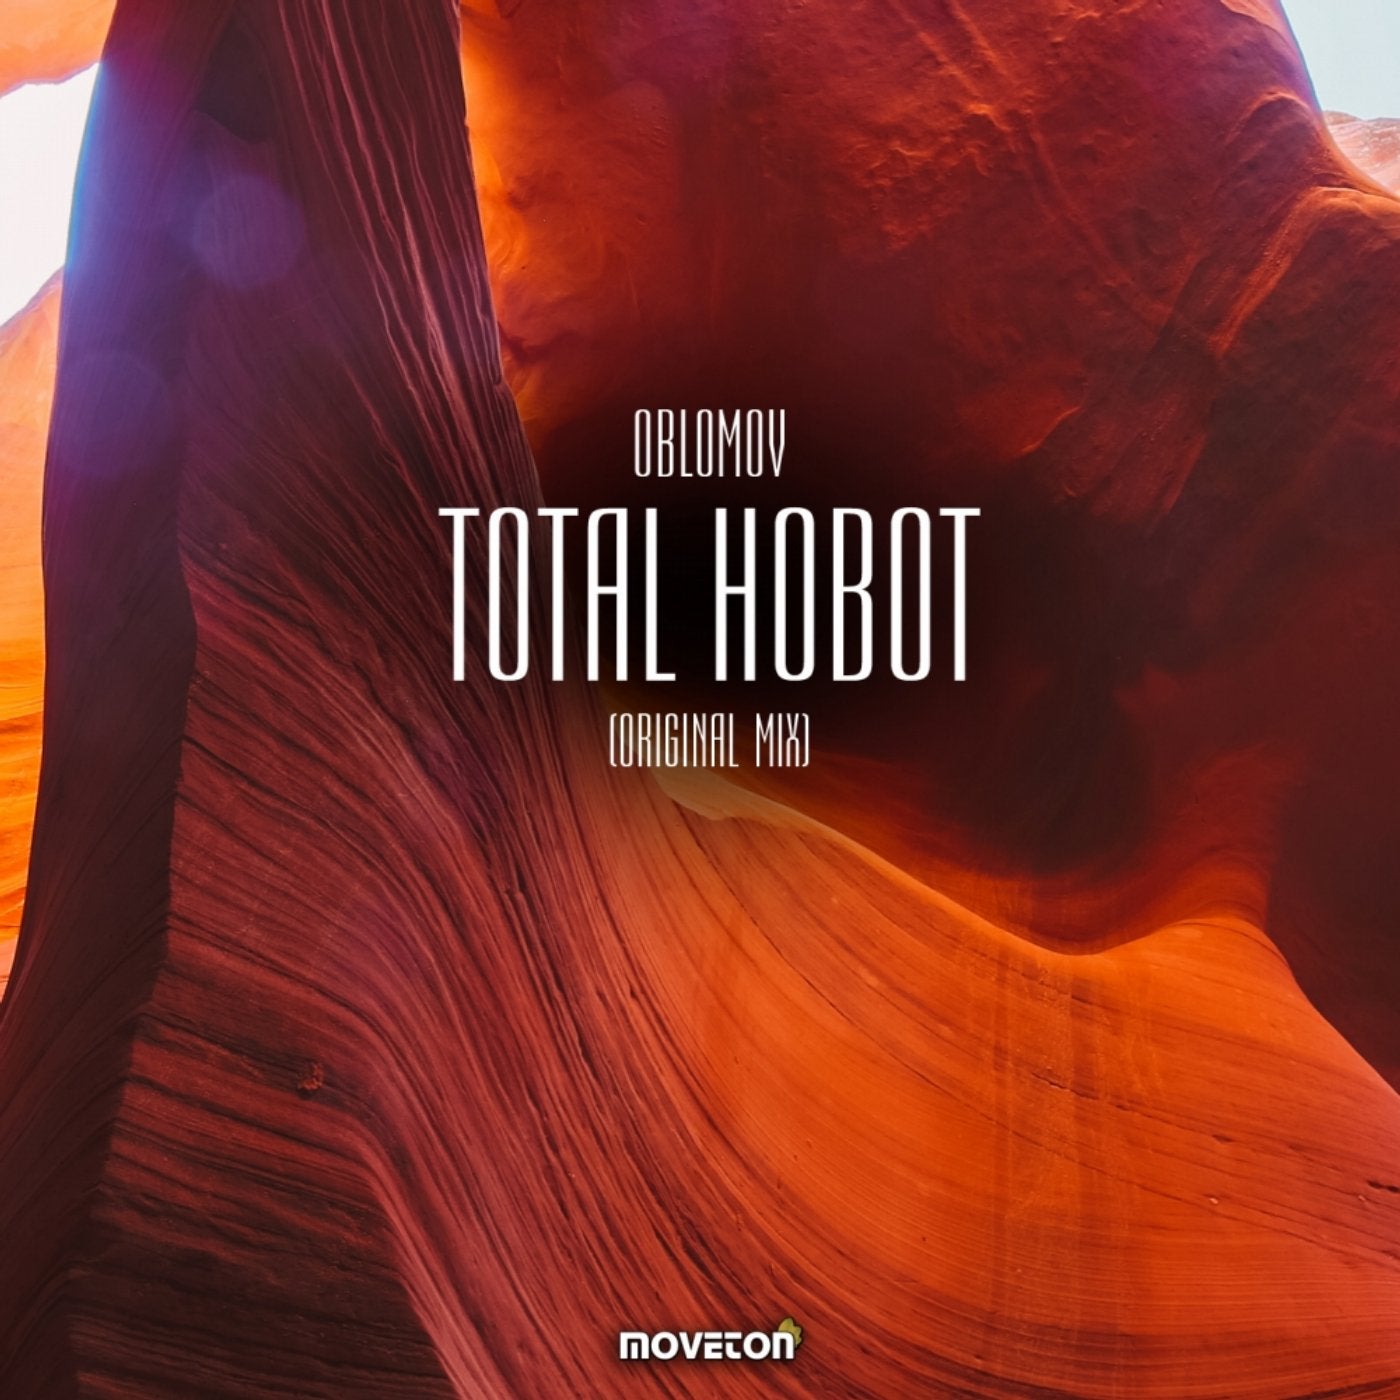 Total Hobot